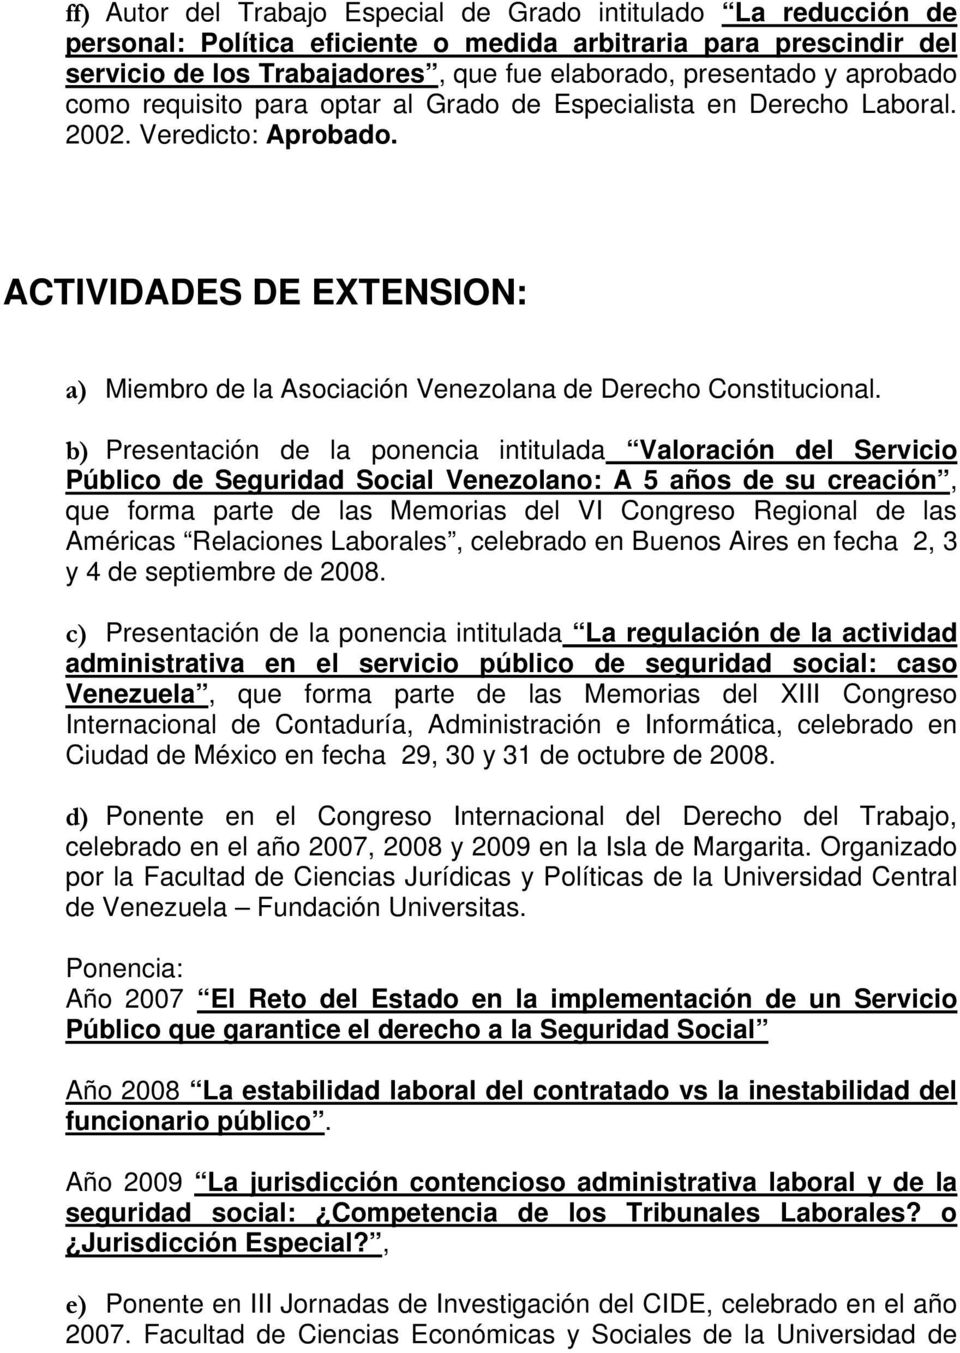 b) Presentación de la ponencia intitulada Valoración del Servicio Público de Seguridad Social Venezolano: A 5 años de su creación, que forma parte de las Memorias del VI Congreso Regional de las